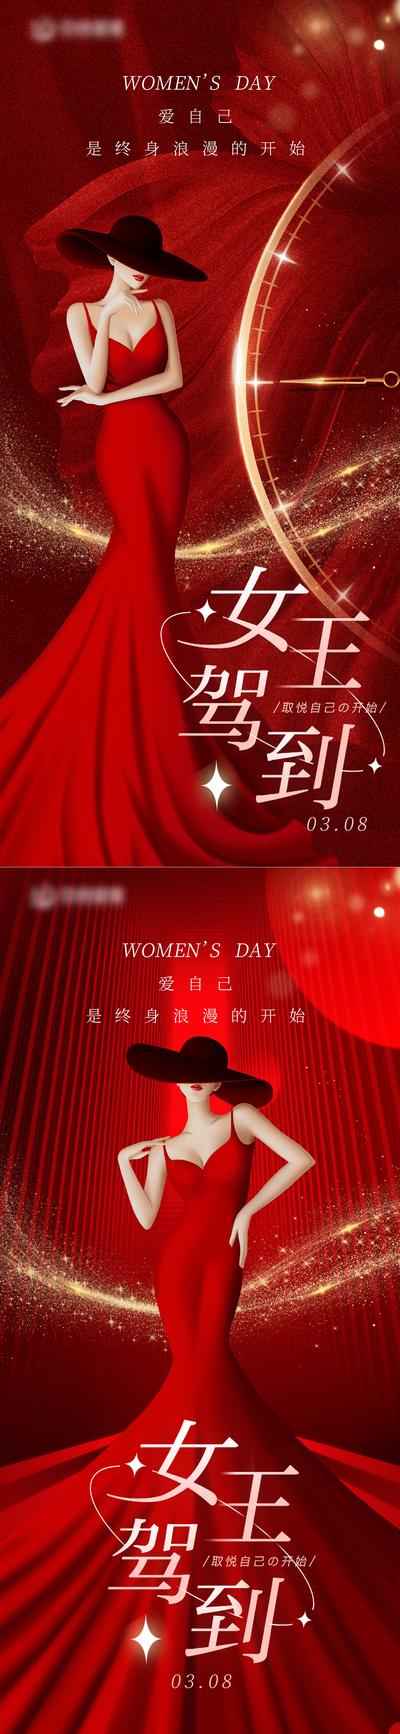 南门网 3.8妇女节海报